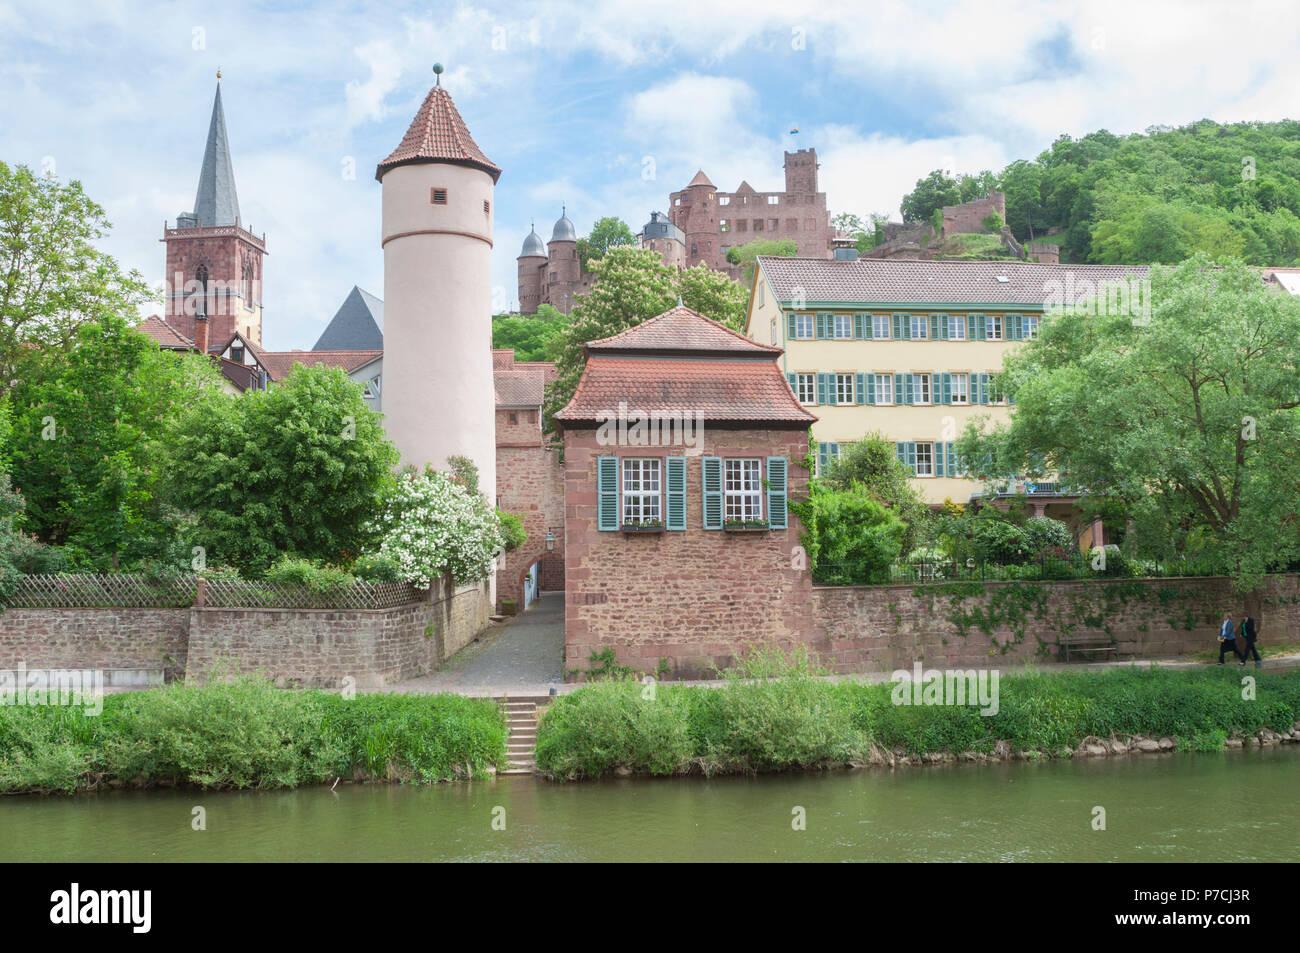 castle wertheim, Wertheim, Main-Tauber, Main river, Tauber river, Odenwald, Spessart, Baden-Wuerttemberg, Heilbronn-Franconia, Germany Stock Photo